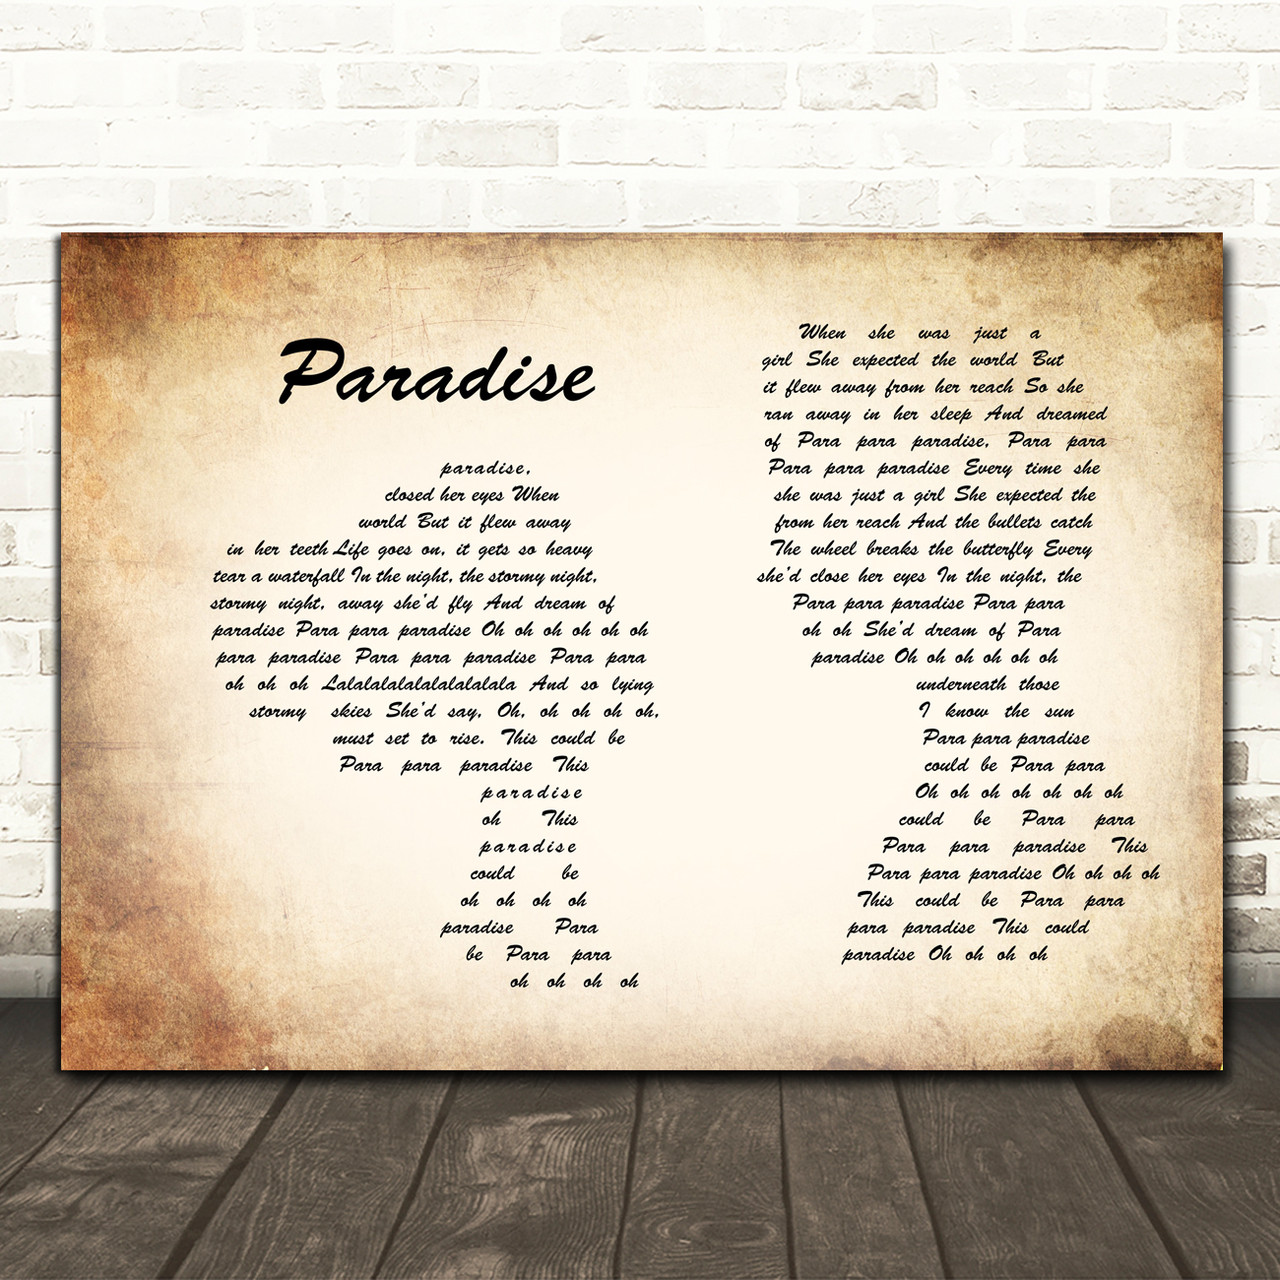 paradise - coldplay  Pretty lyrics, Great song lyrics, Just lyrics